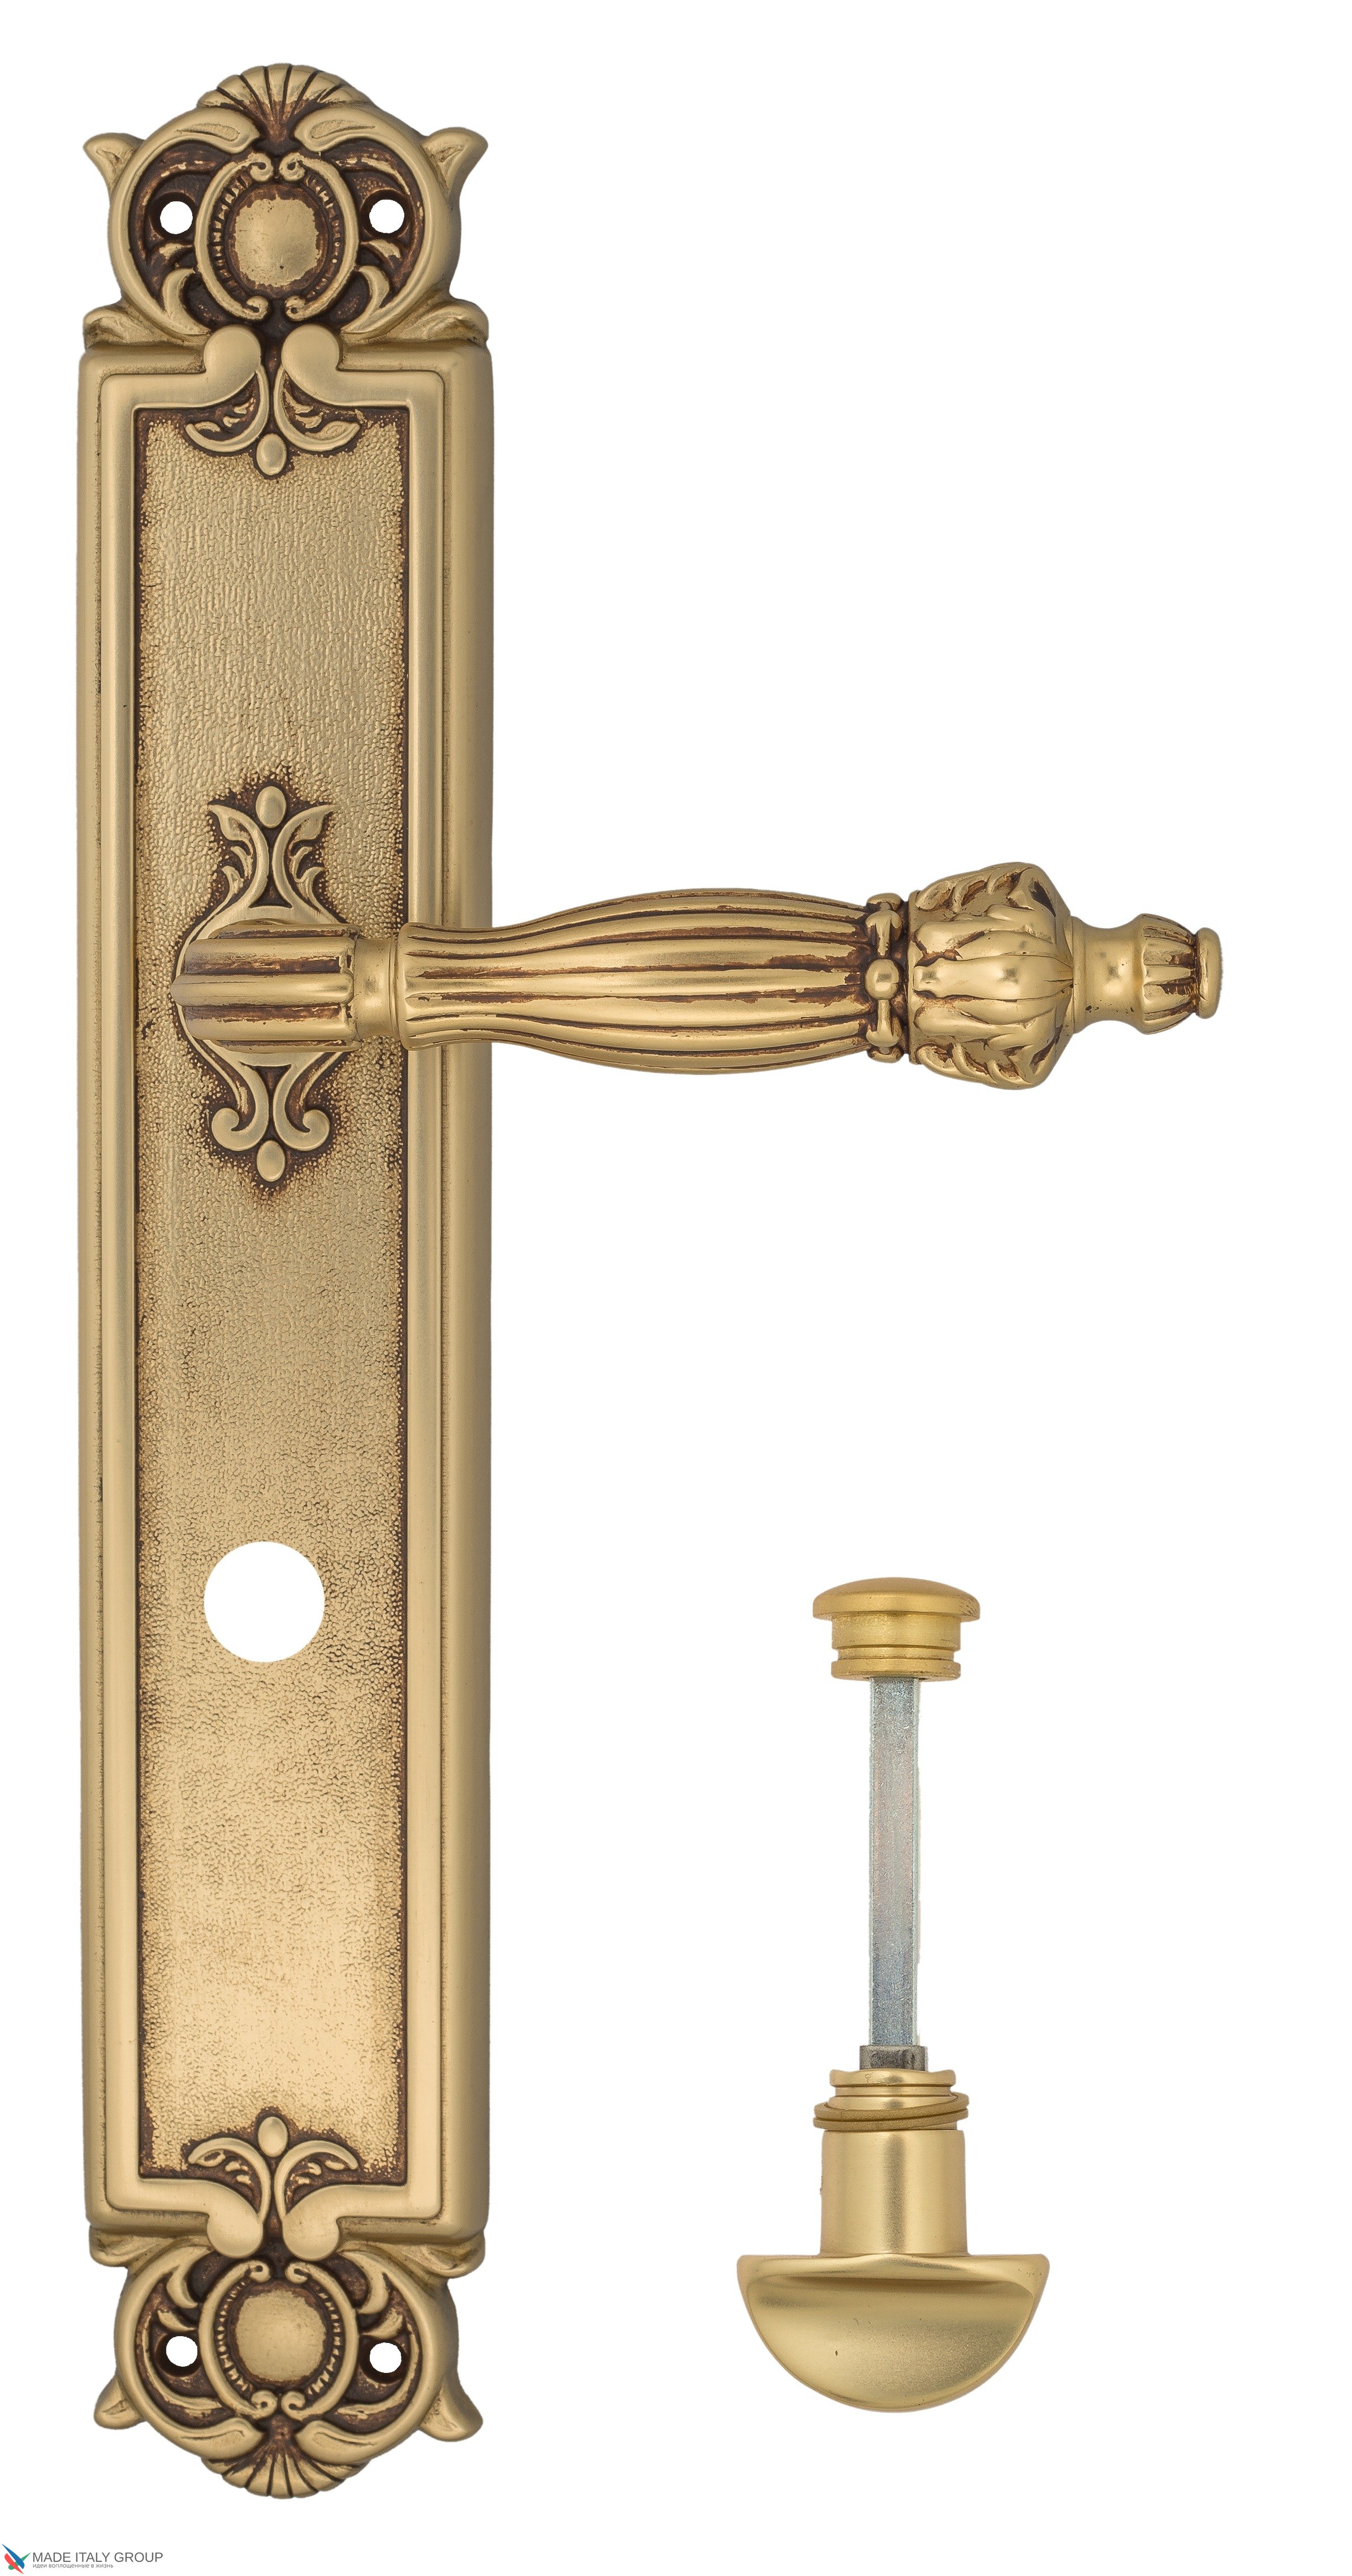 Дверная ручка Venezia "OLIMPO" WC-2 на планке PL97 французское золото + коричневый